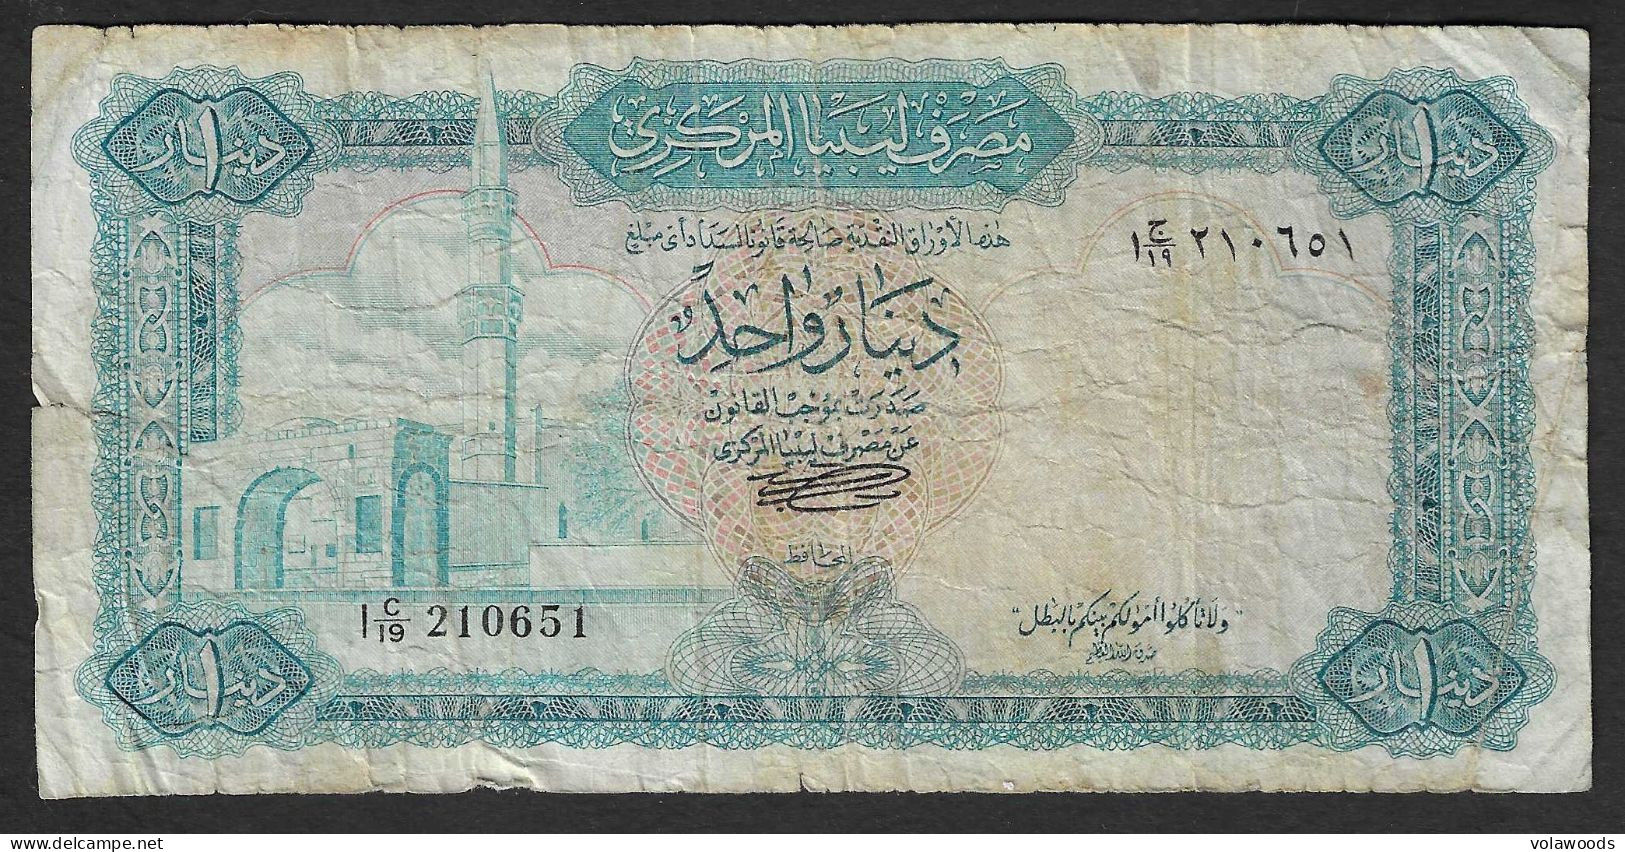 Libia - Banconota Circolata Da 1 Dinaro P-35b - 1972 #19 - Libië